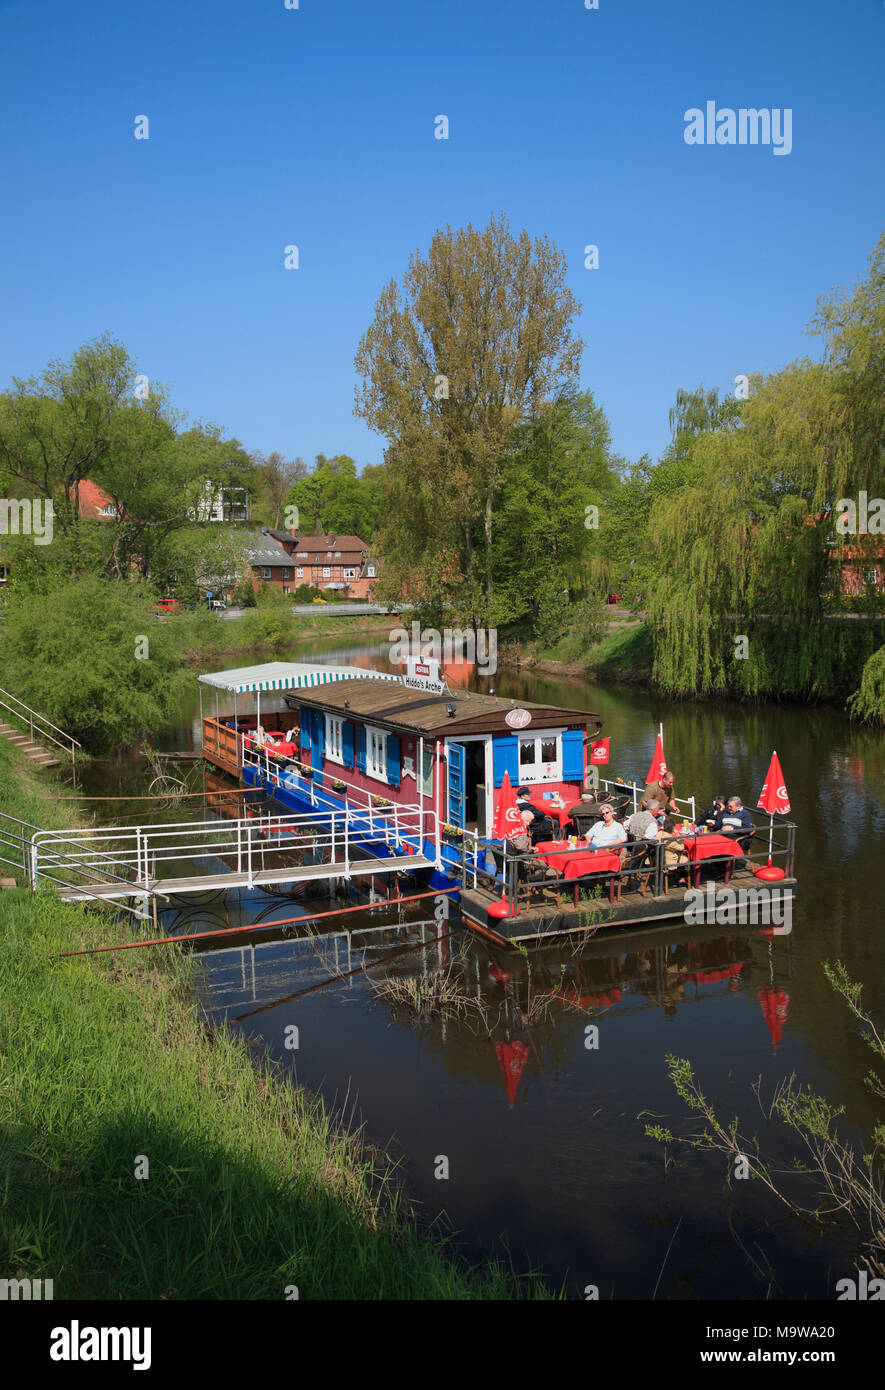 Schwimmbad Restaurant & Cafe HIDDOS ARCHE auf dem Fluss Jeetzel, Hitzacker (Elbe), Niedersachsen, Deutschland, Europa Stockfoto